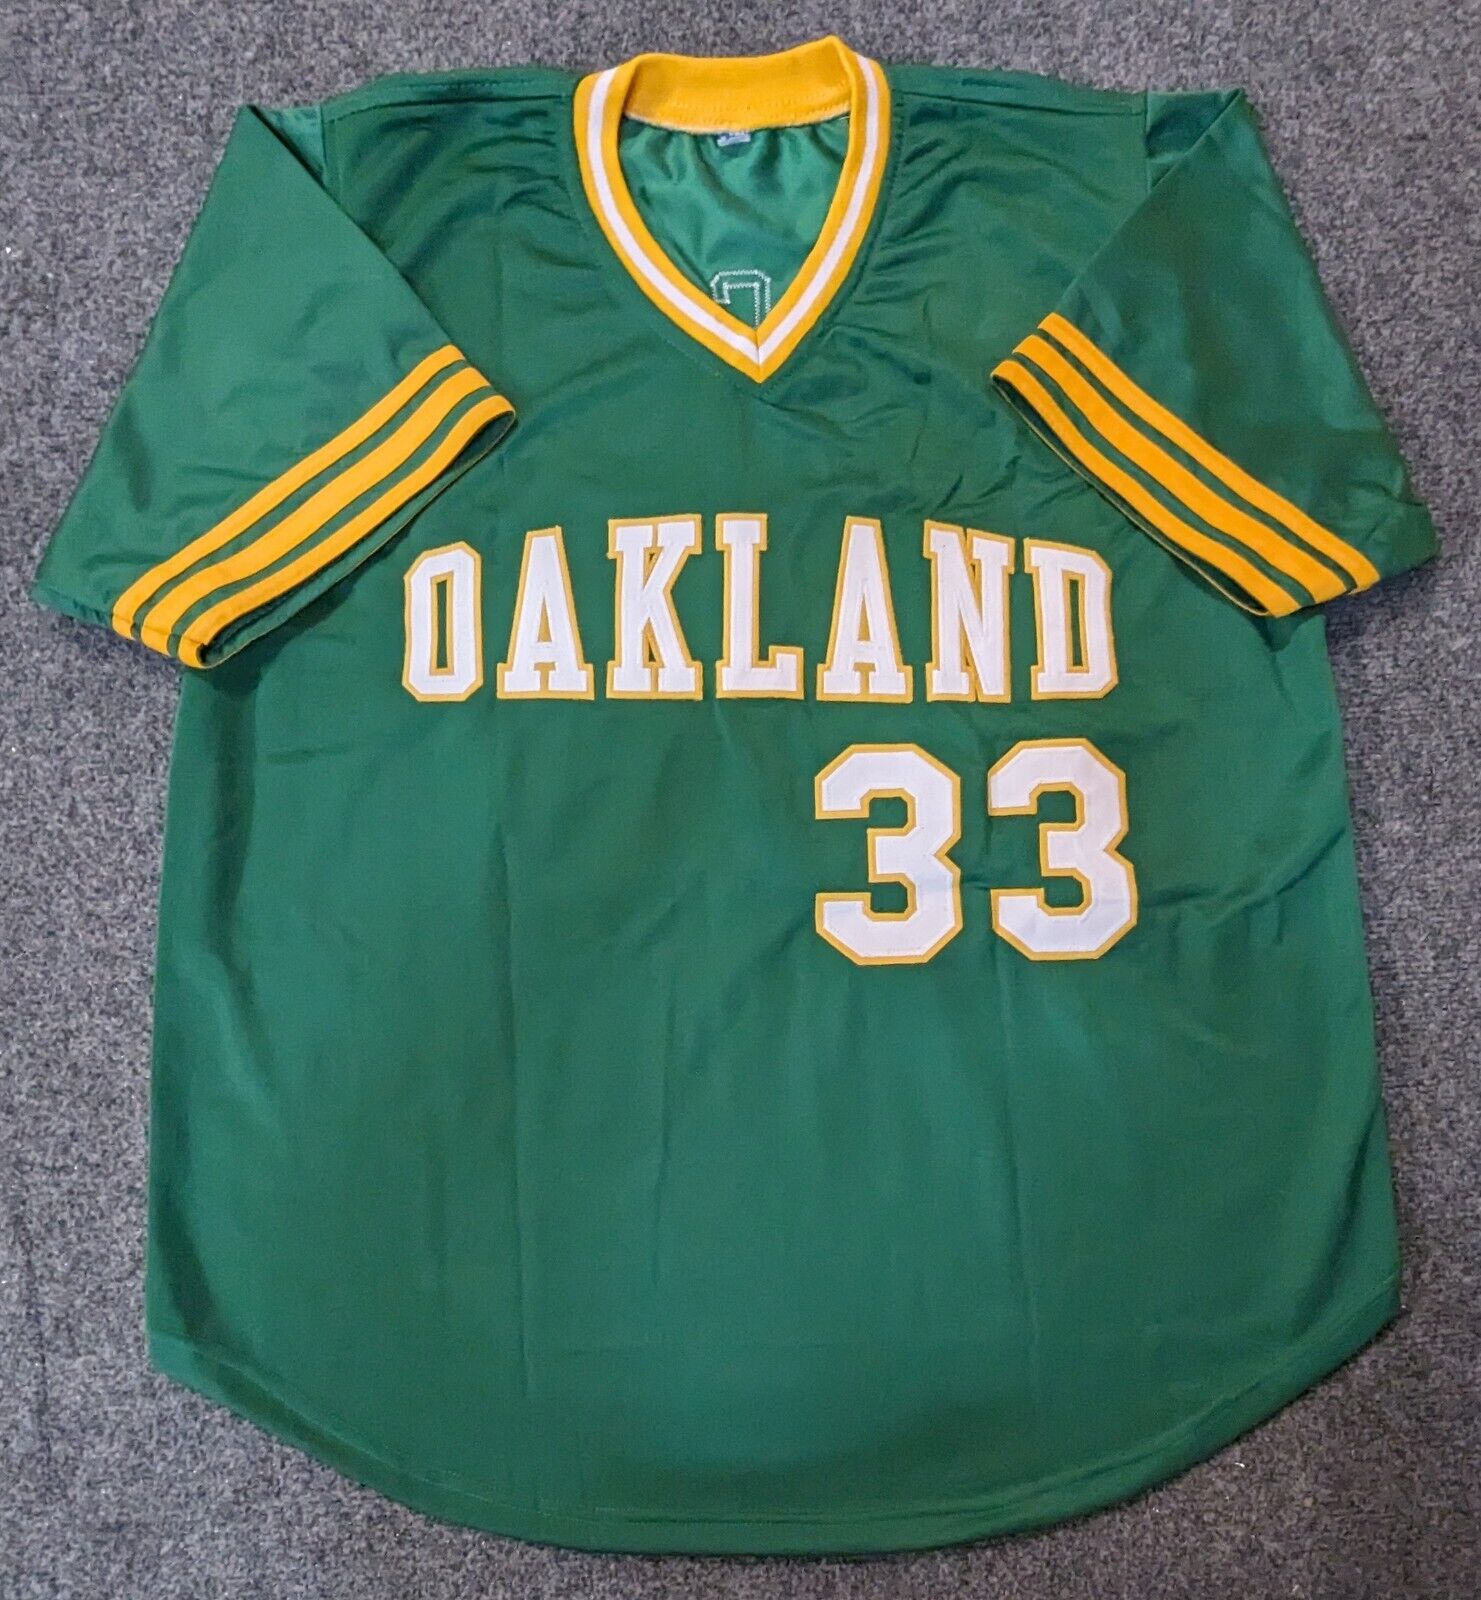 oakland a's green jersey